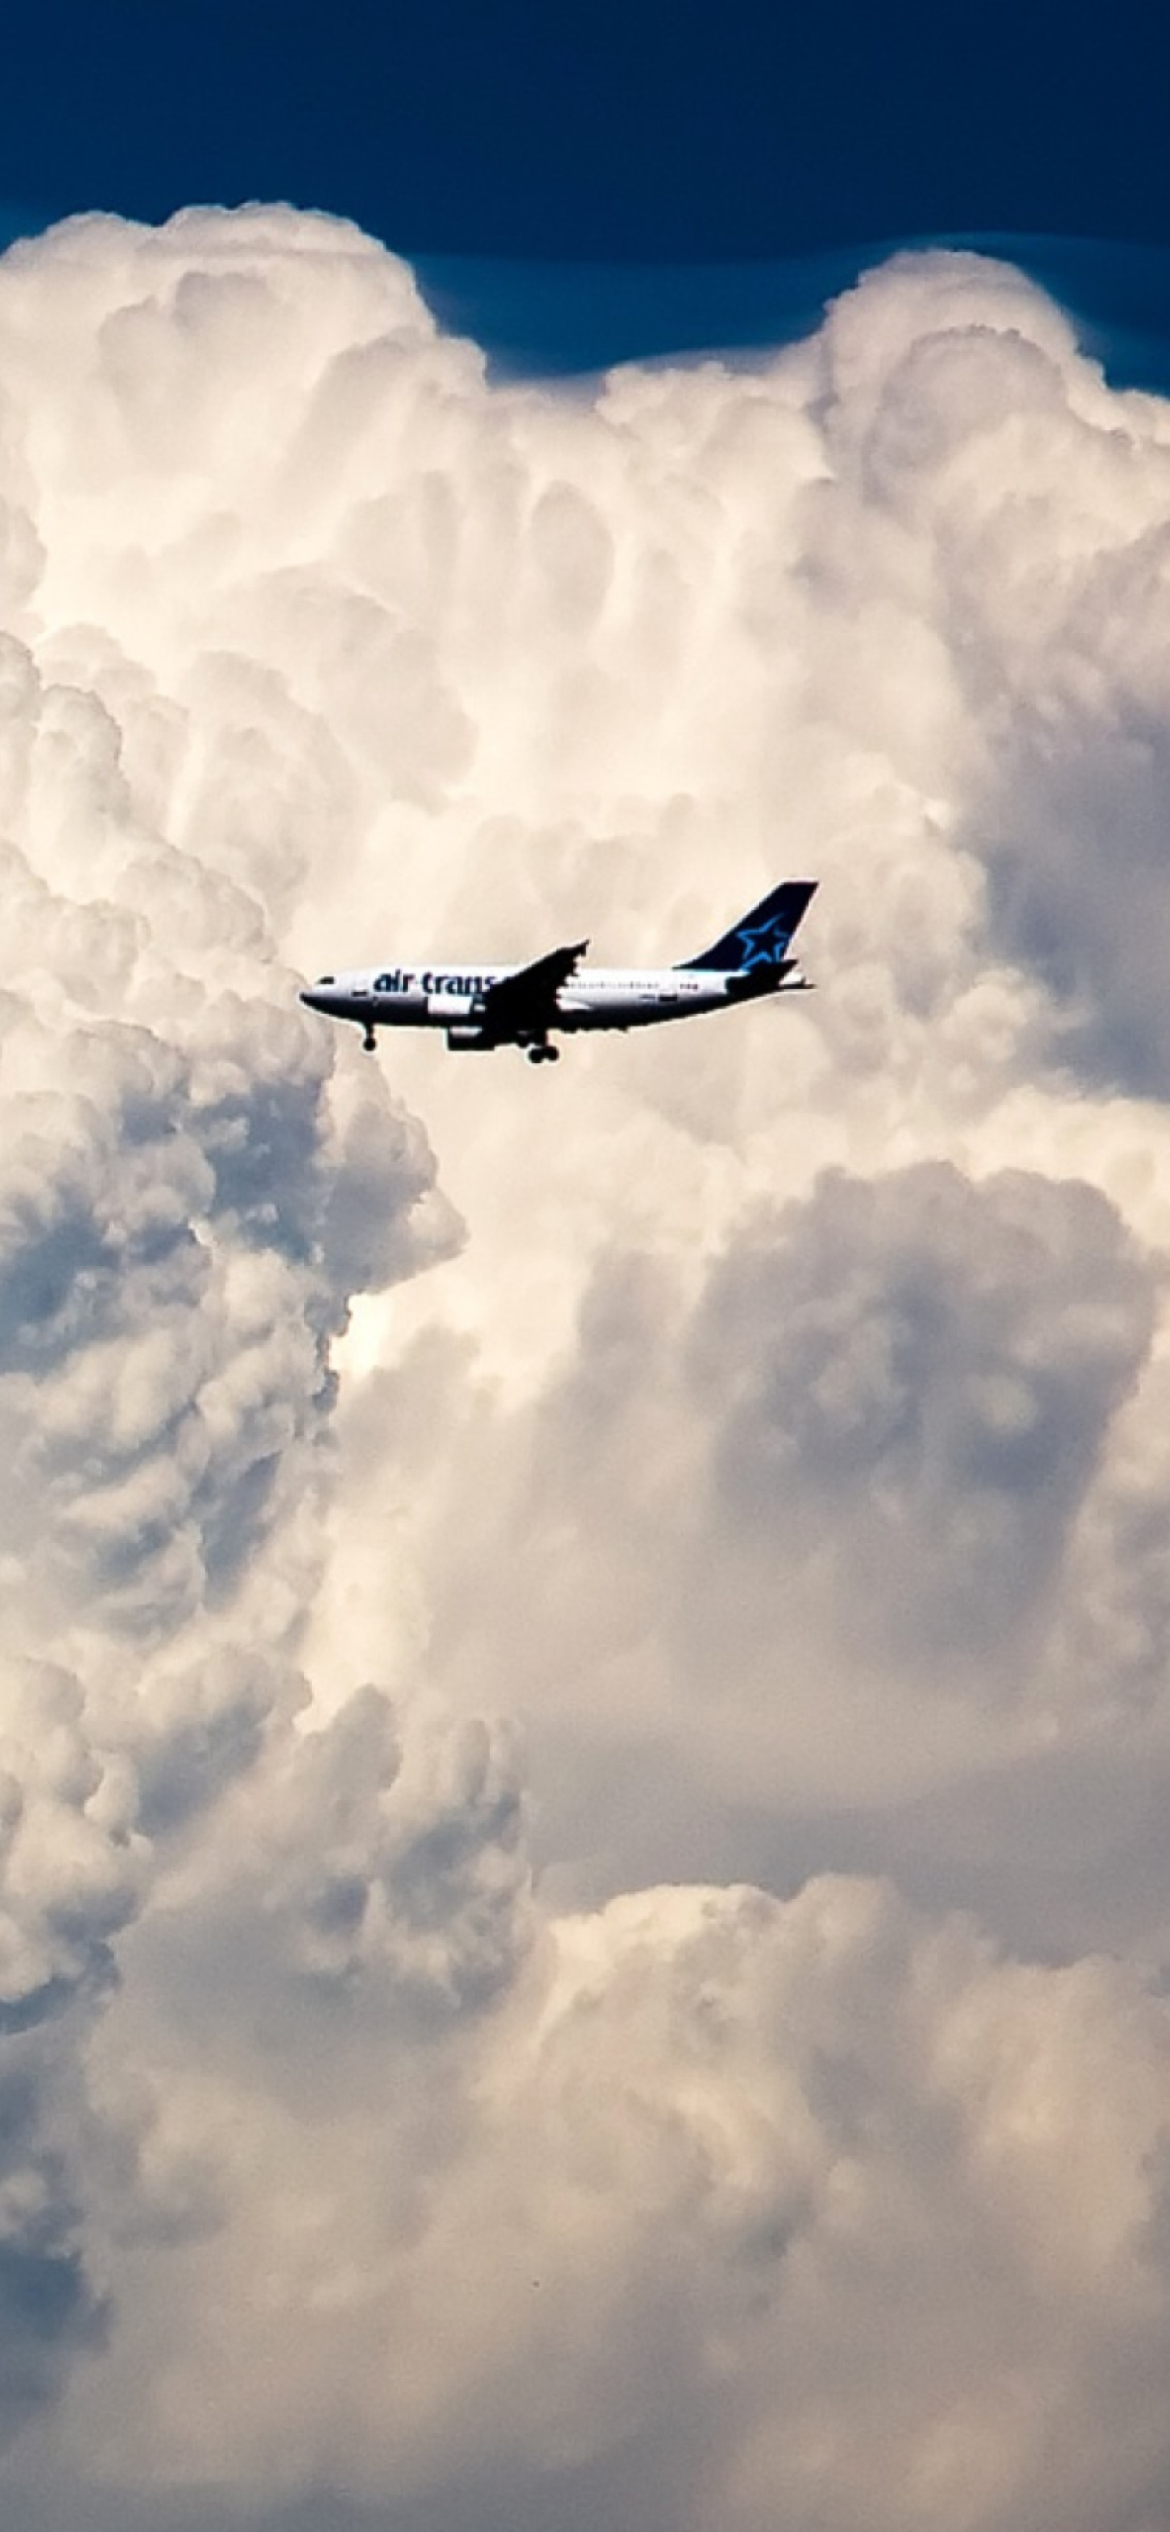 Plane In The Clouds screenshot #1 1170x2532